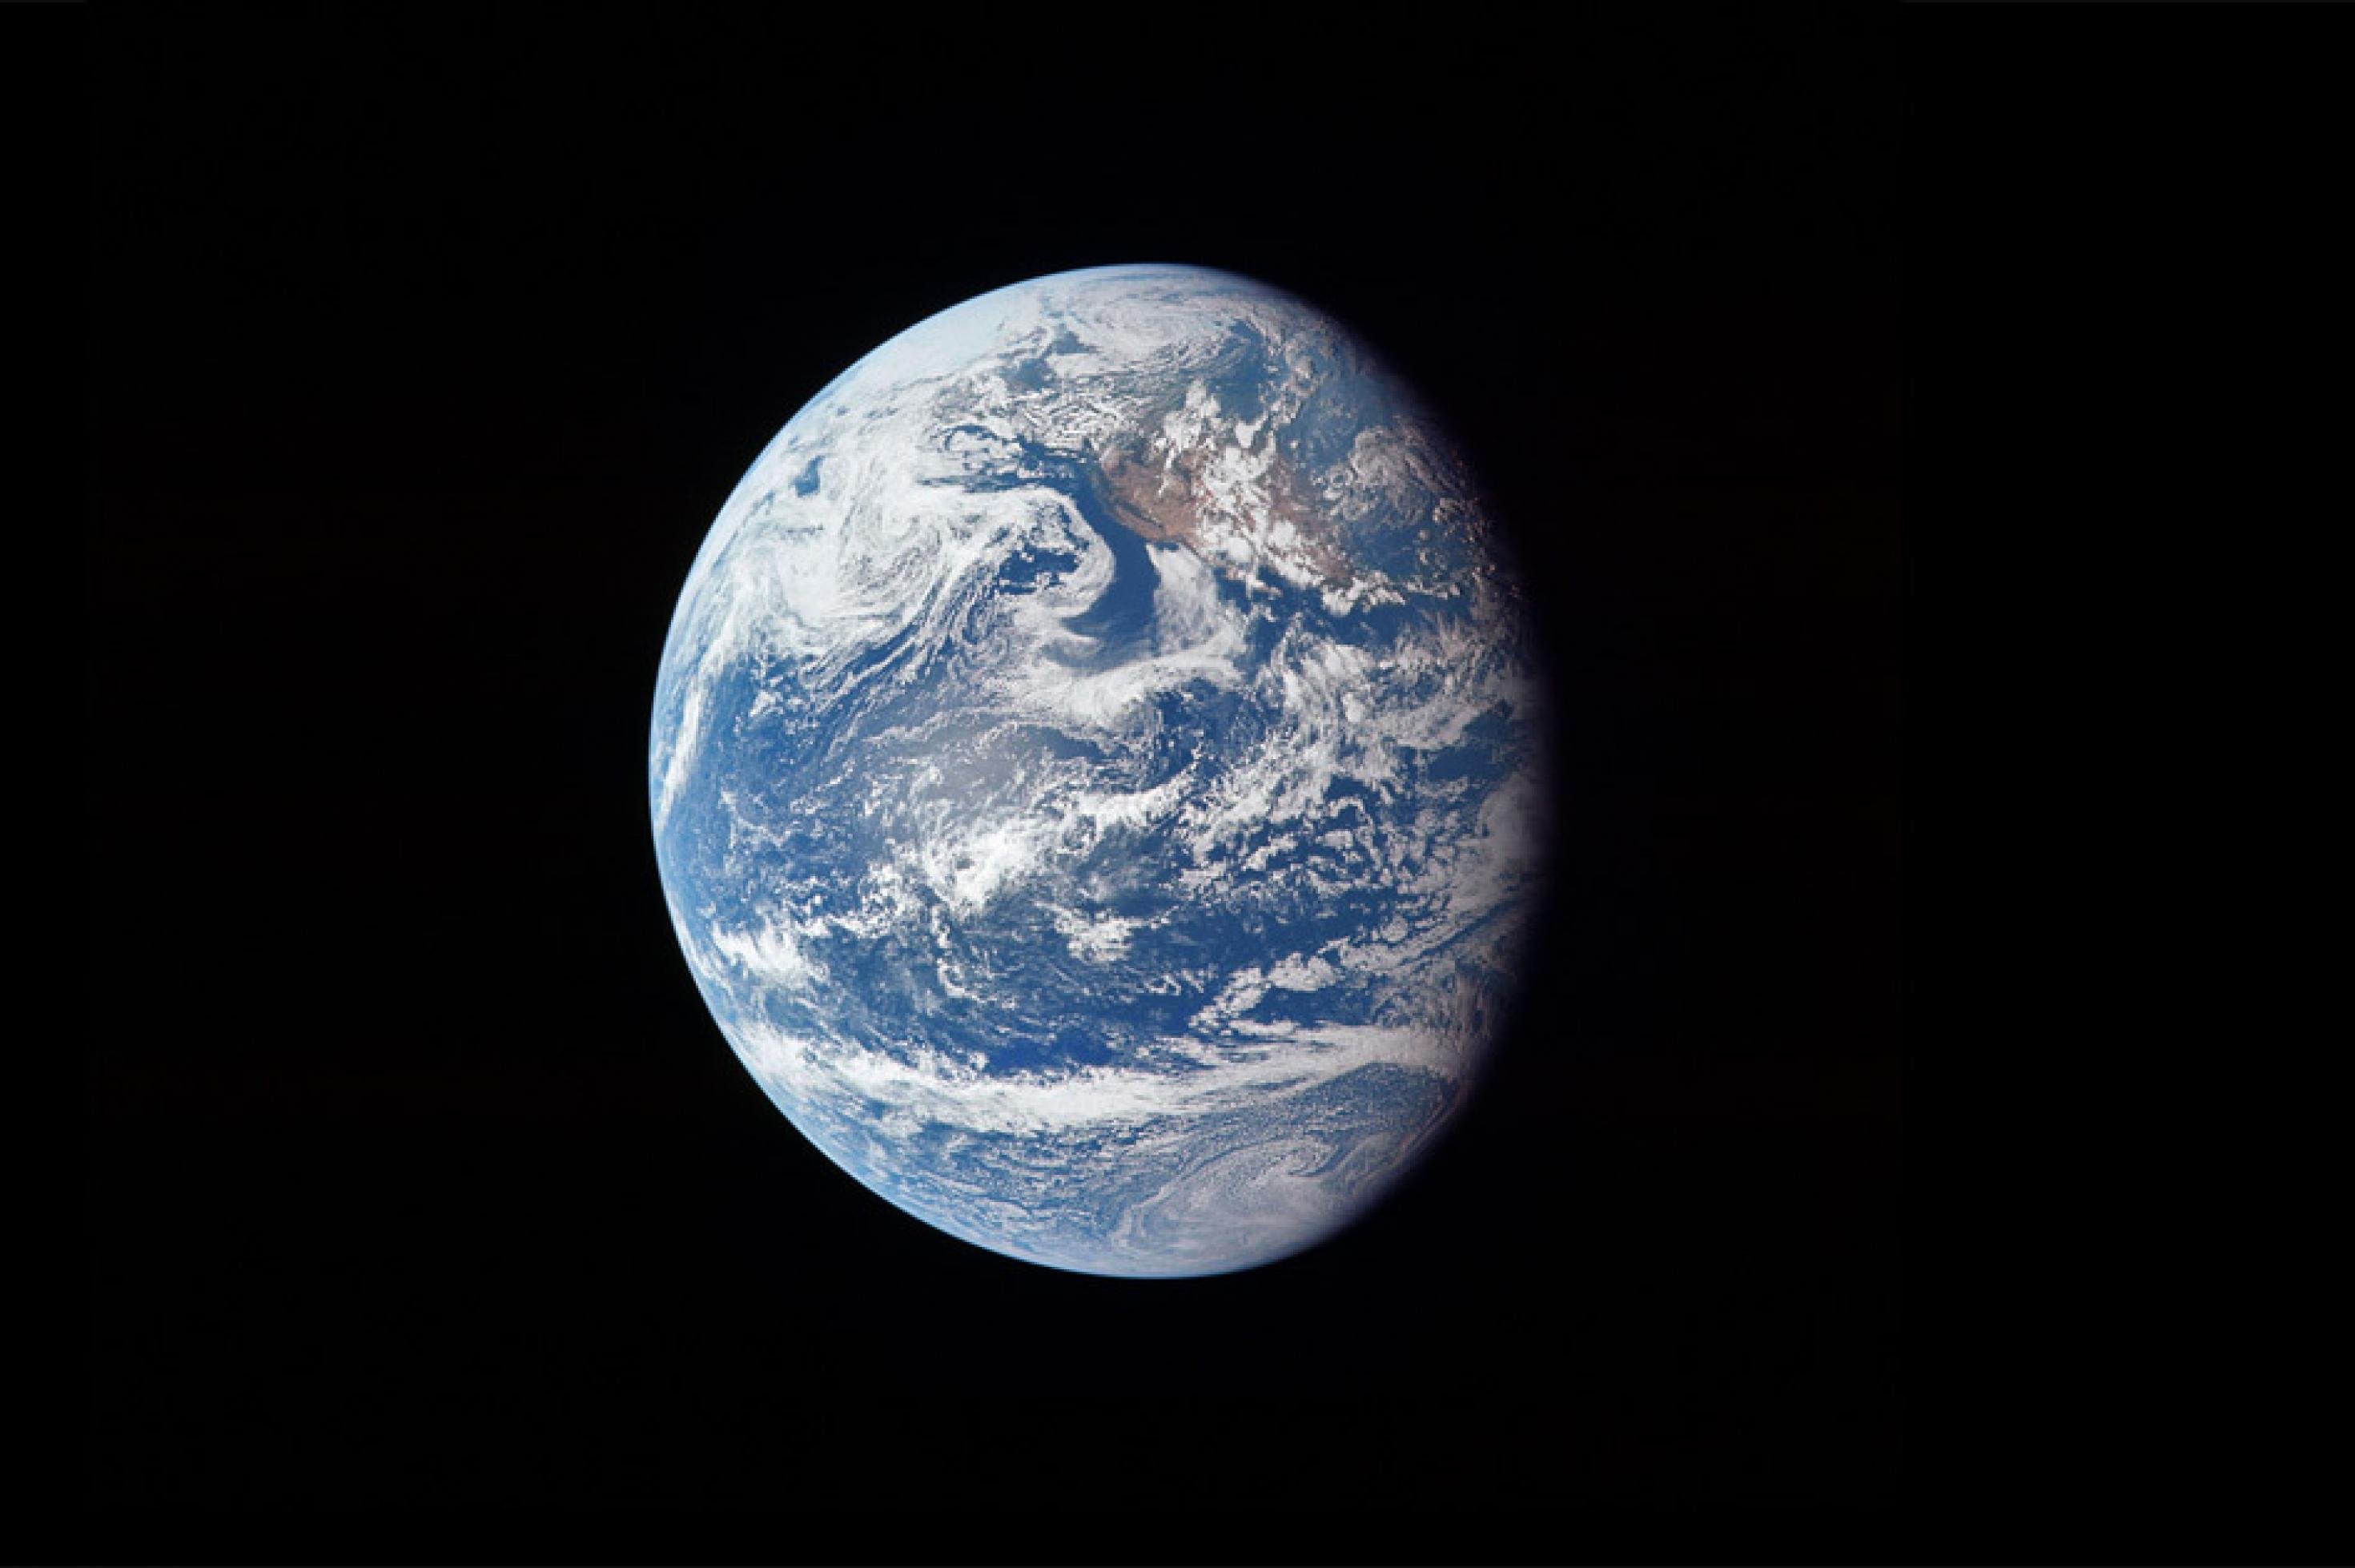 Der Planet Erde, ein wahrlich blauer Planet aus Sicht der drei NASA-Astronauten Neil Armstrong, Buzz Aldrin und Michael Collins auf ihrem Flug zum Mond im Juli 1969.